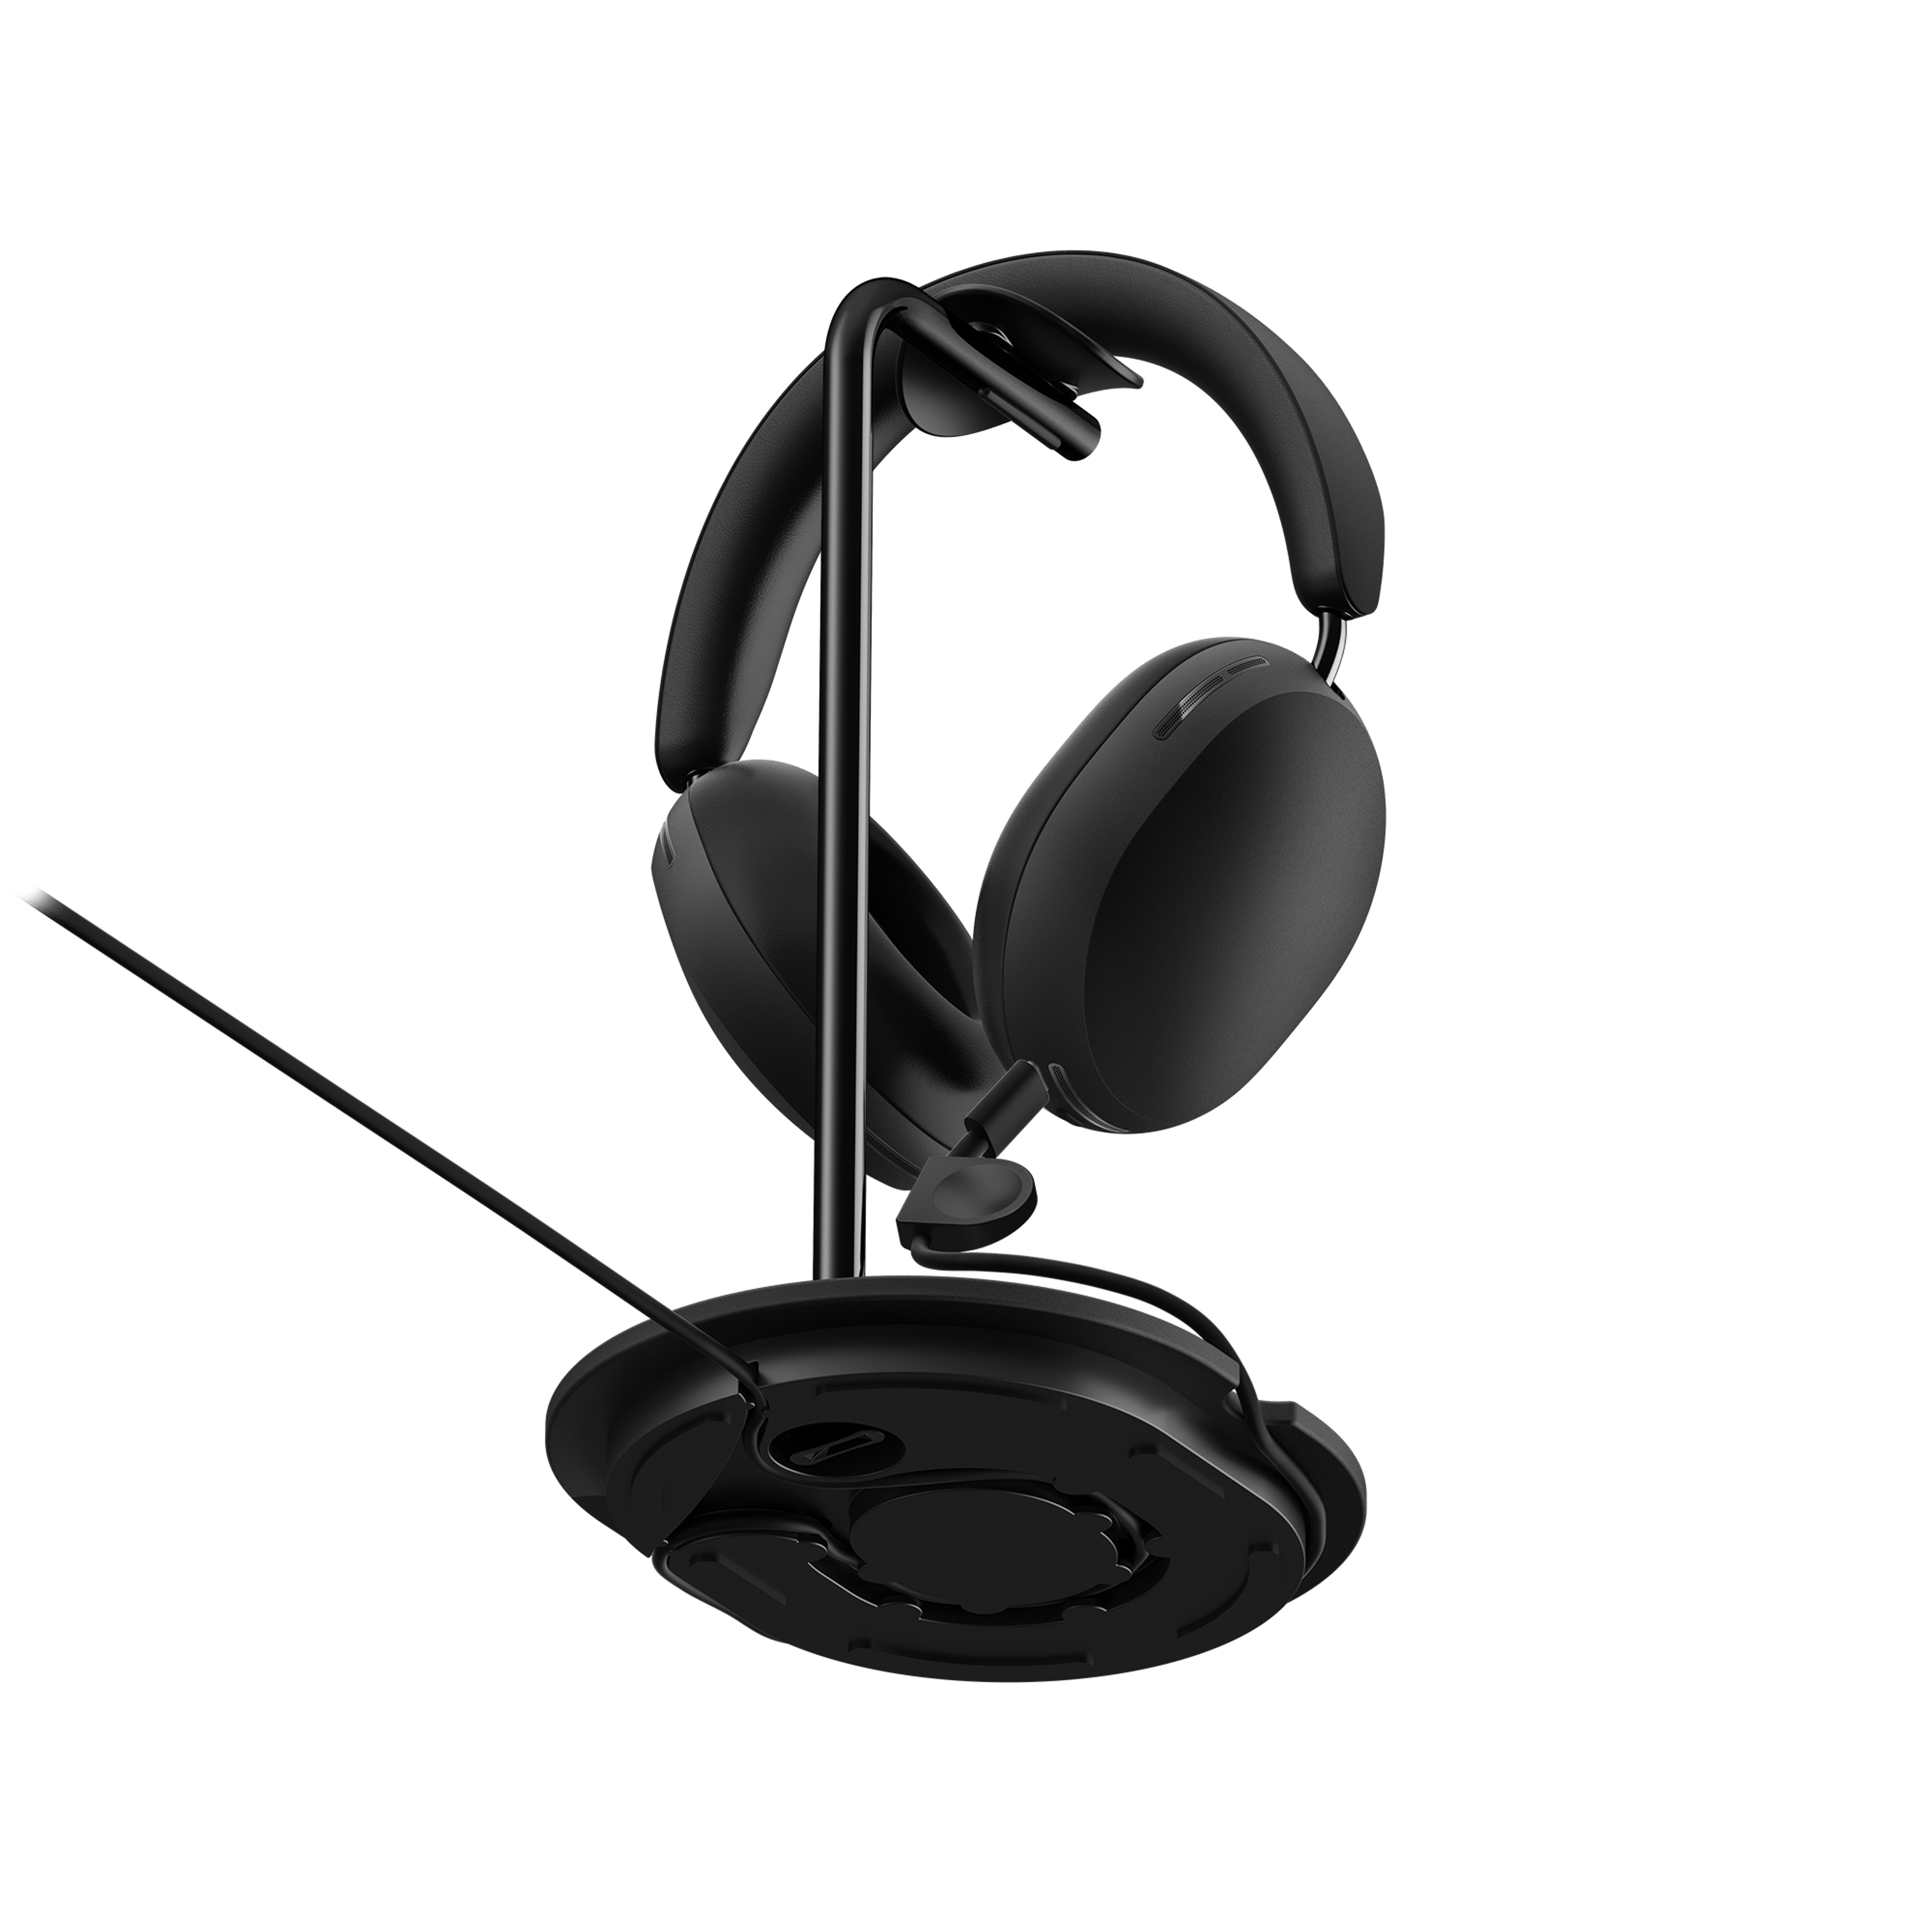 mustat Sonos Ace -kuulokkeet alhaalta päin Sonos Ace -kuulokkeille tarkoitetussa Sanus-telineessä niin, että johto näkyy